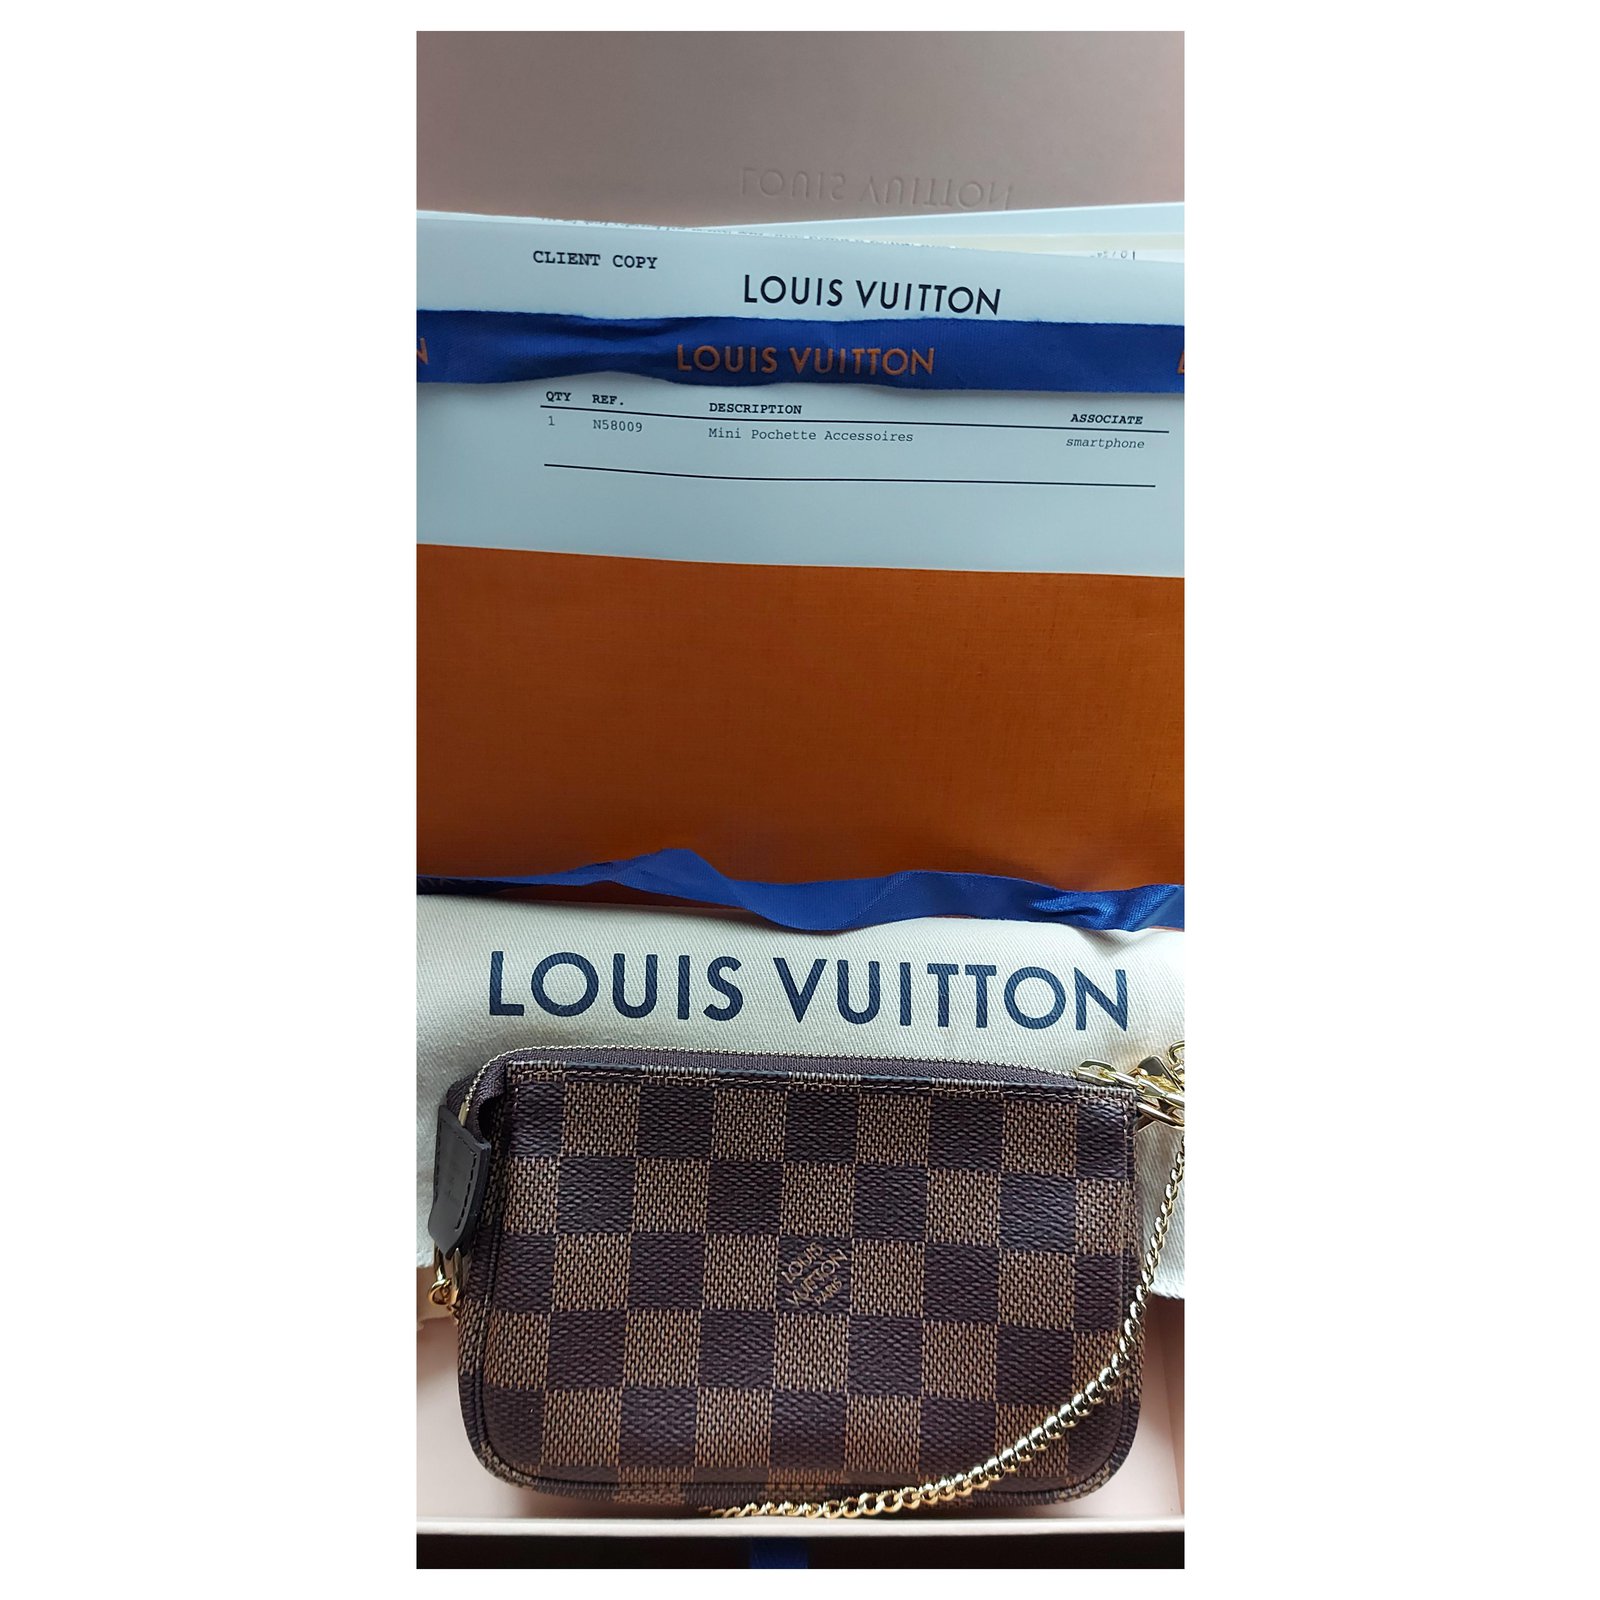 Louis Vuitton Mini Pochette Accessoires Damier Ebene N58009